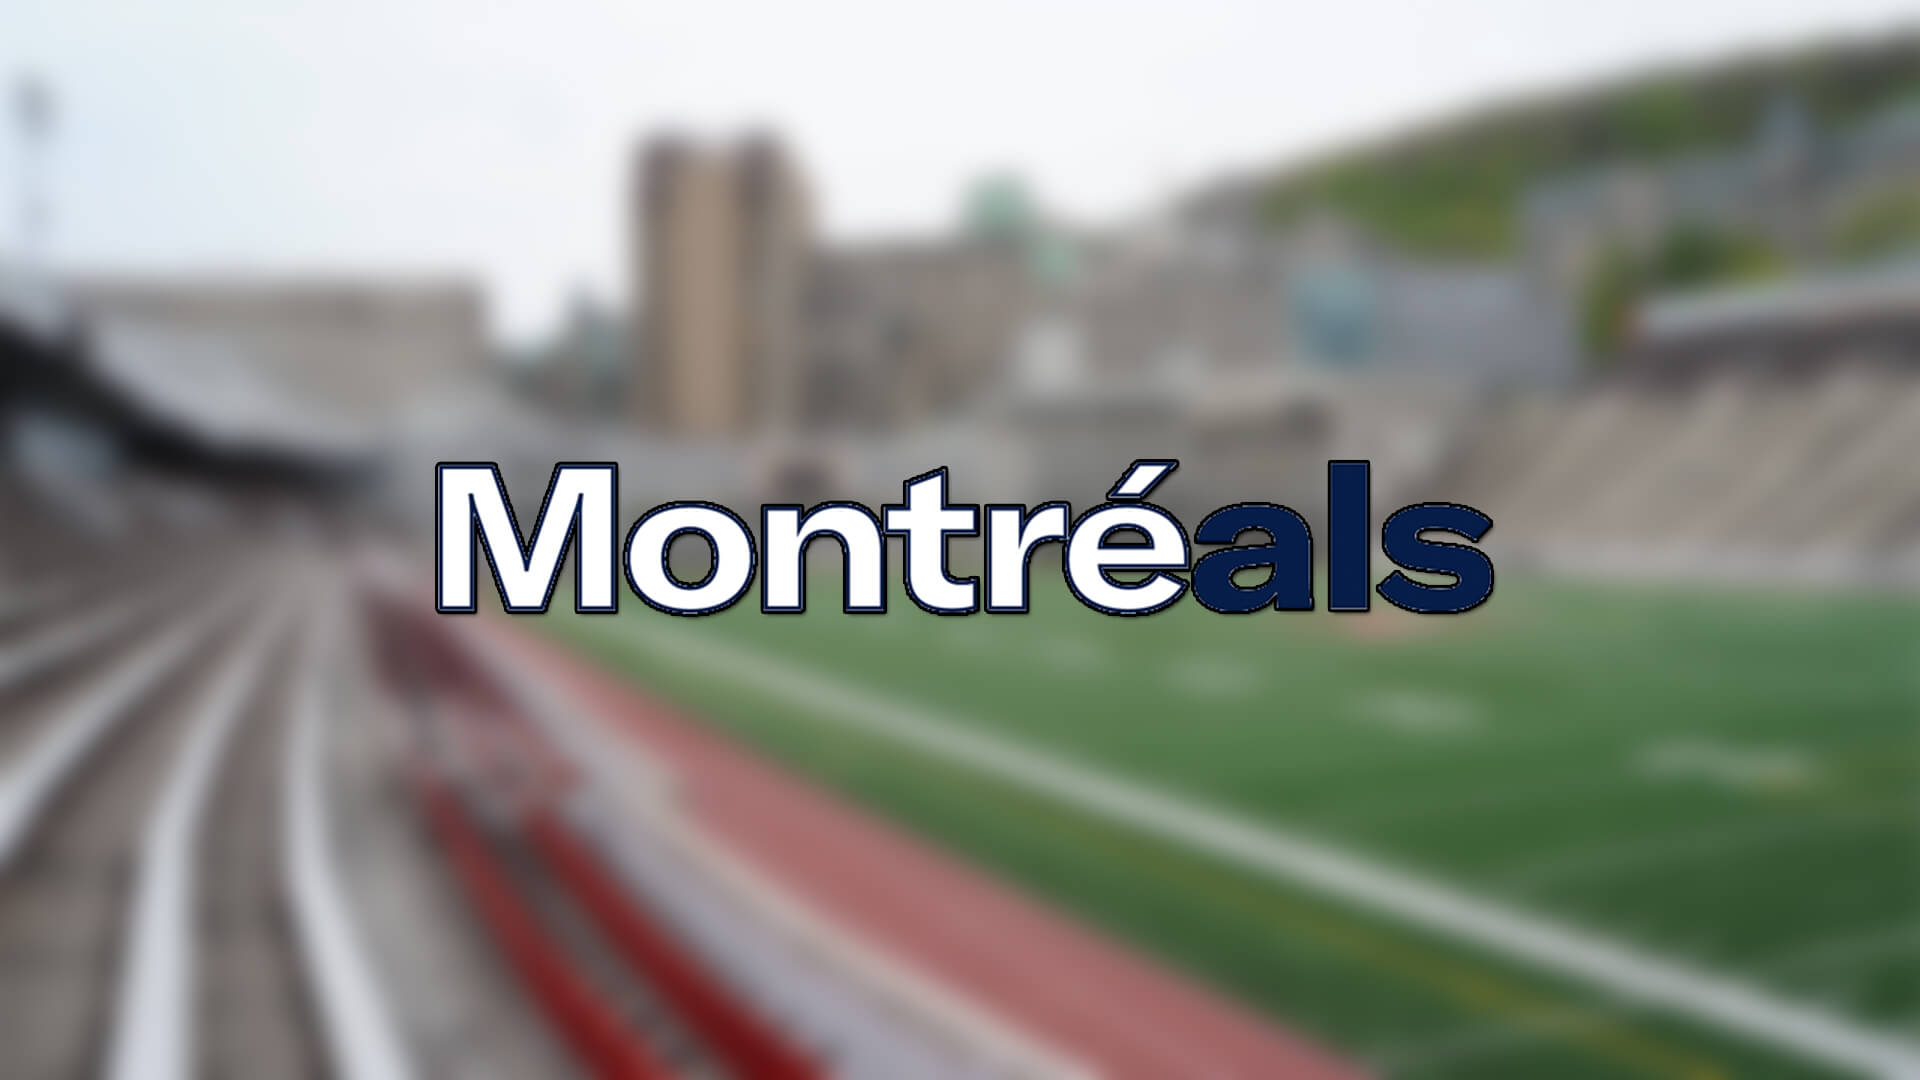 Montreal Alouettes 'in Yeni DC'si Barron Miles Oldu | Korumalı Futbol Türkiye